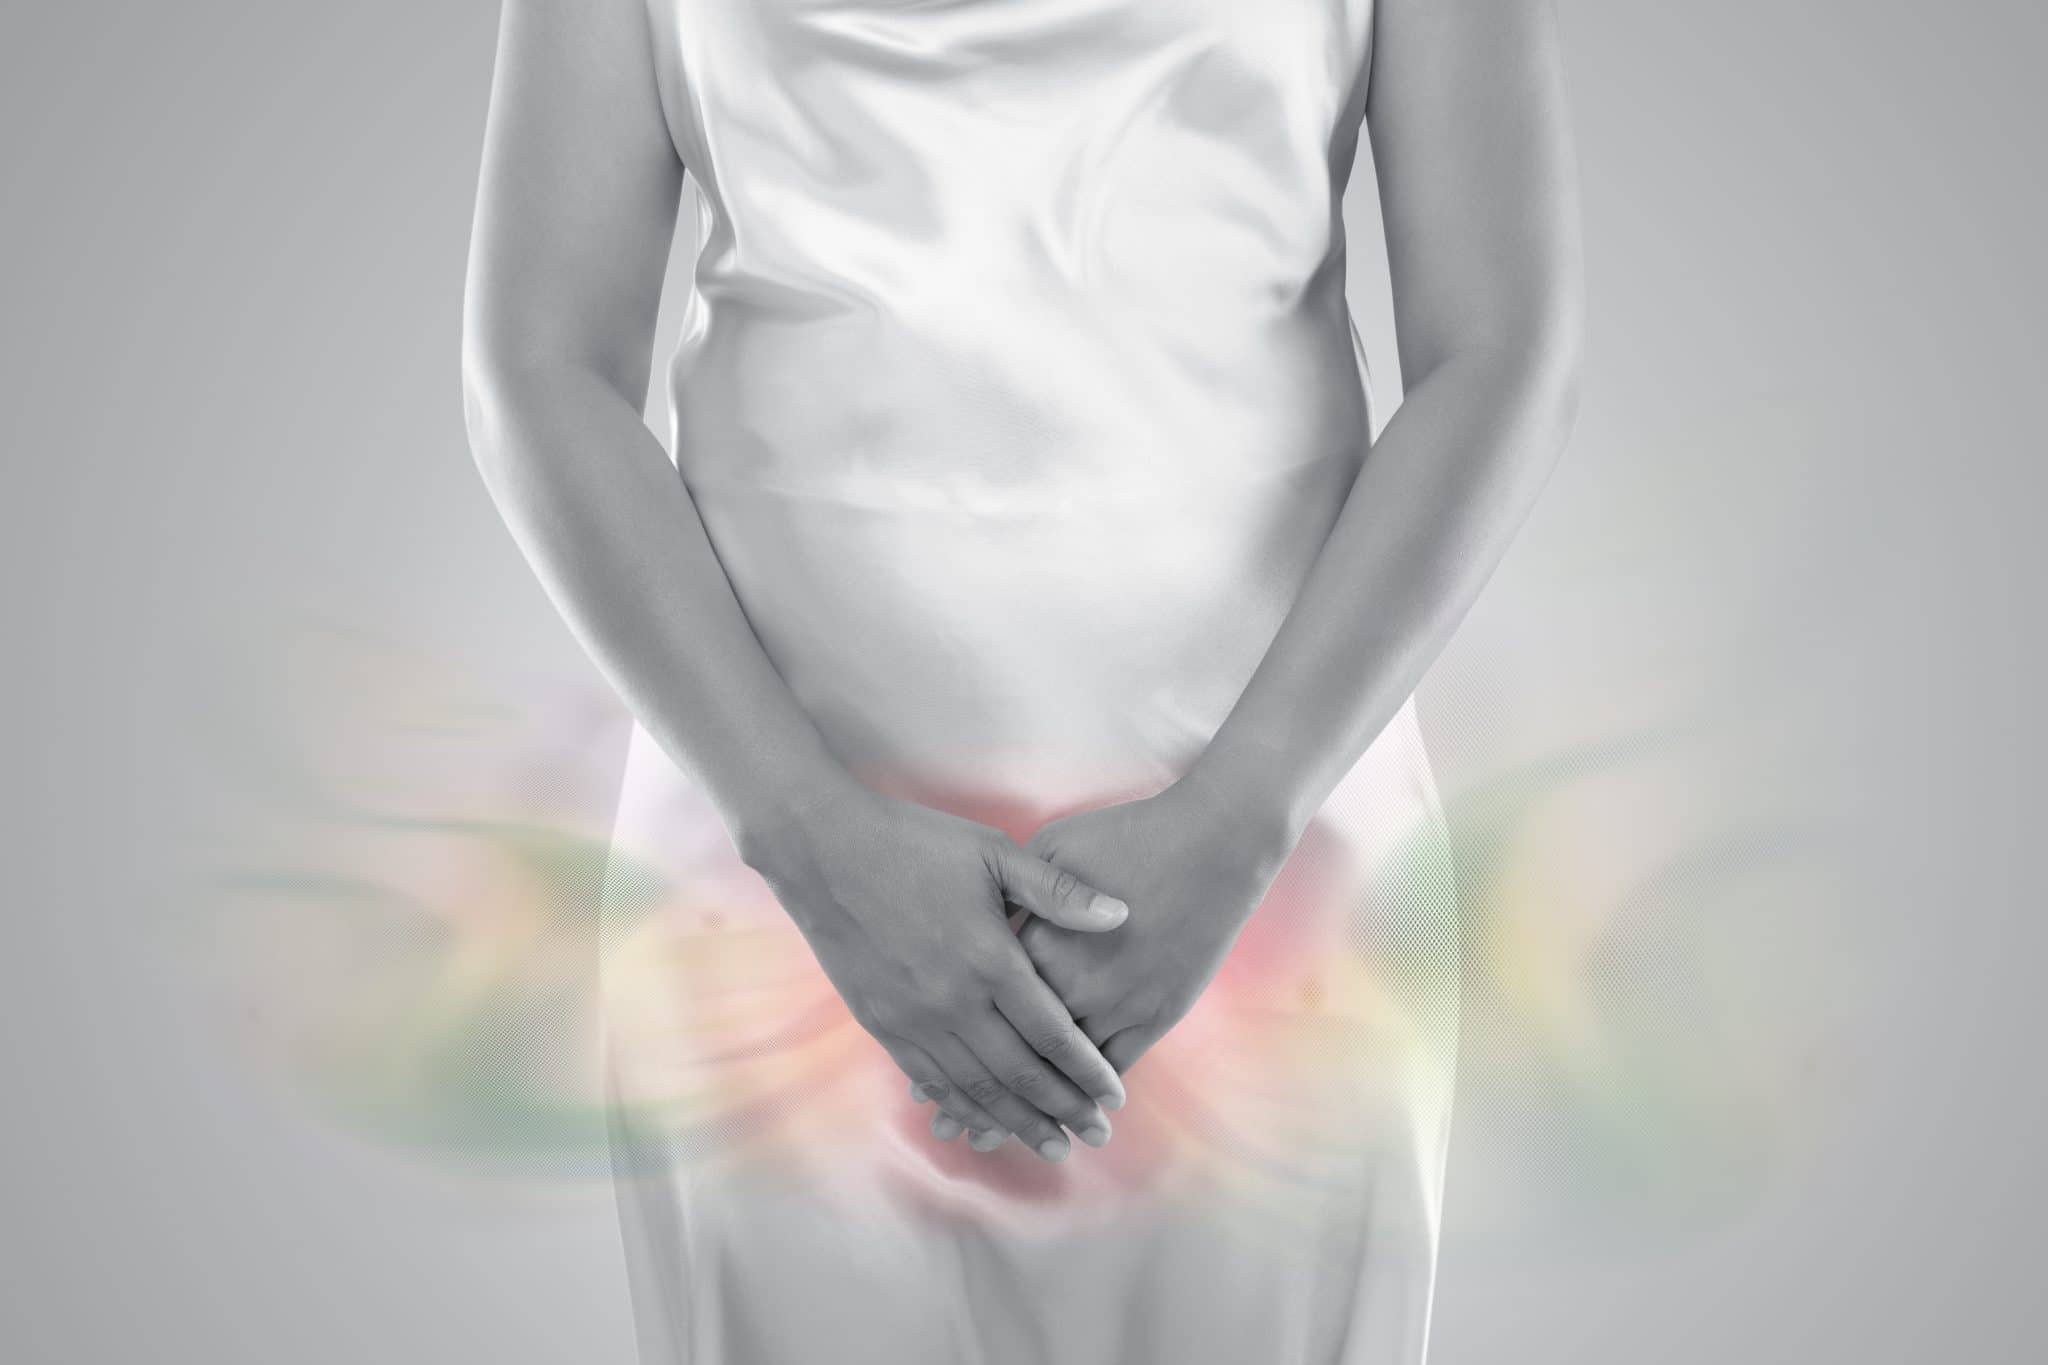 Personne locataire son bas-ventre avec des zones mises en évidence indiquant des symptômes de douleur pelvienne.